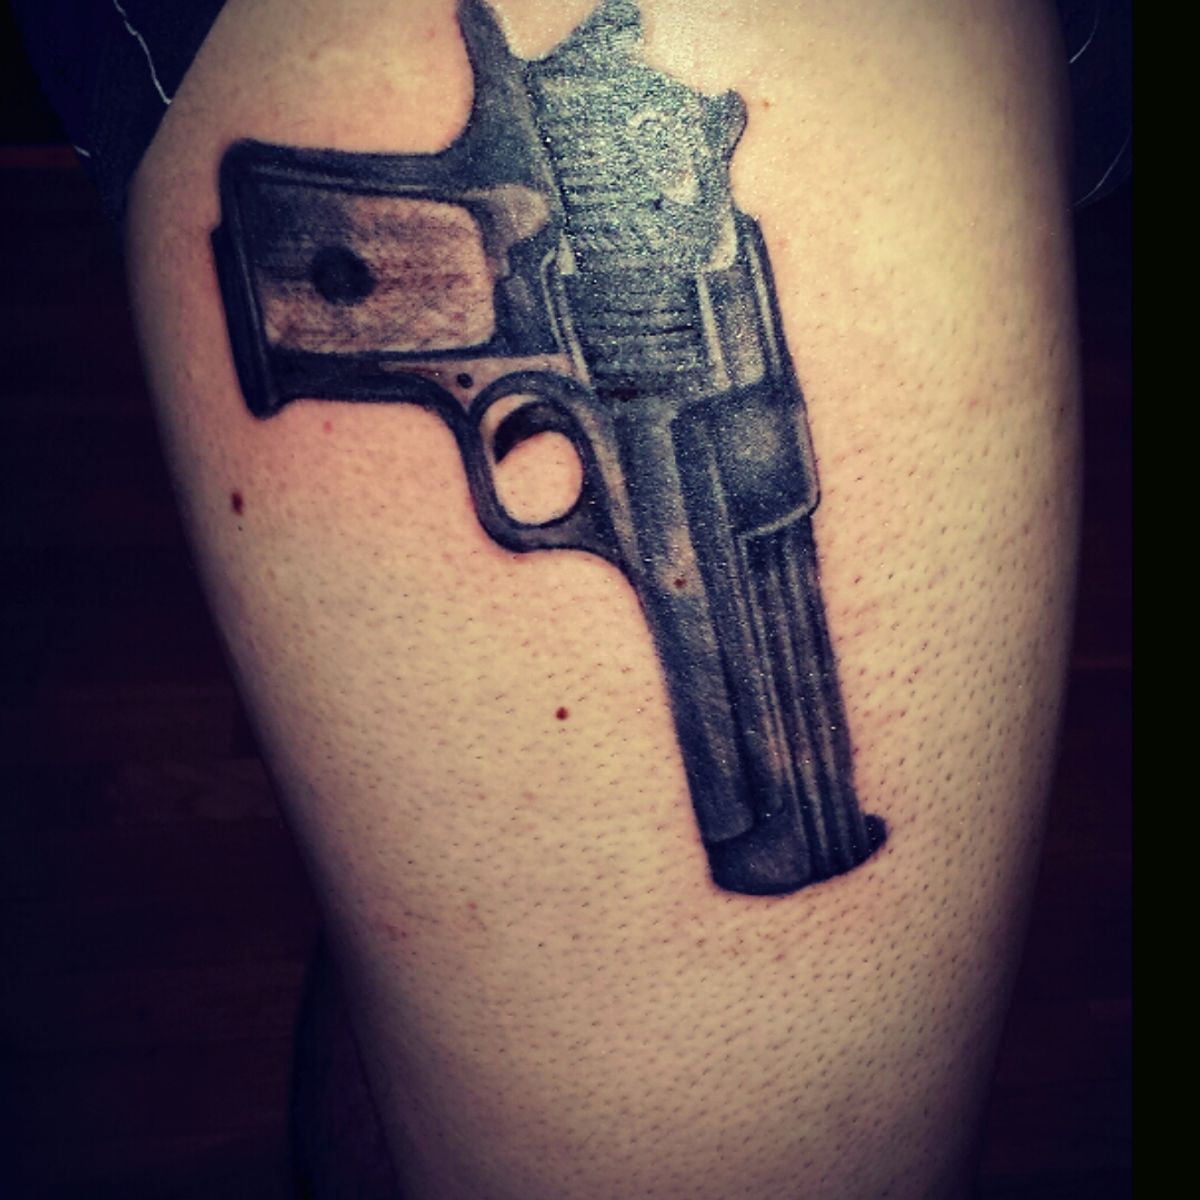 9mm gun tattoo